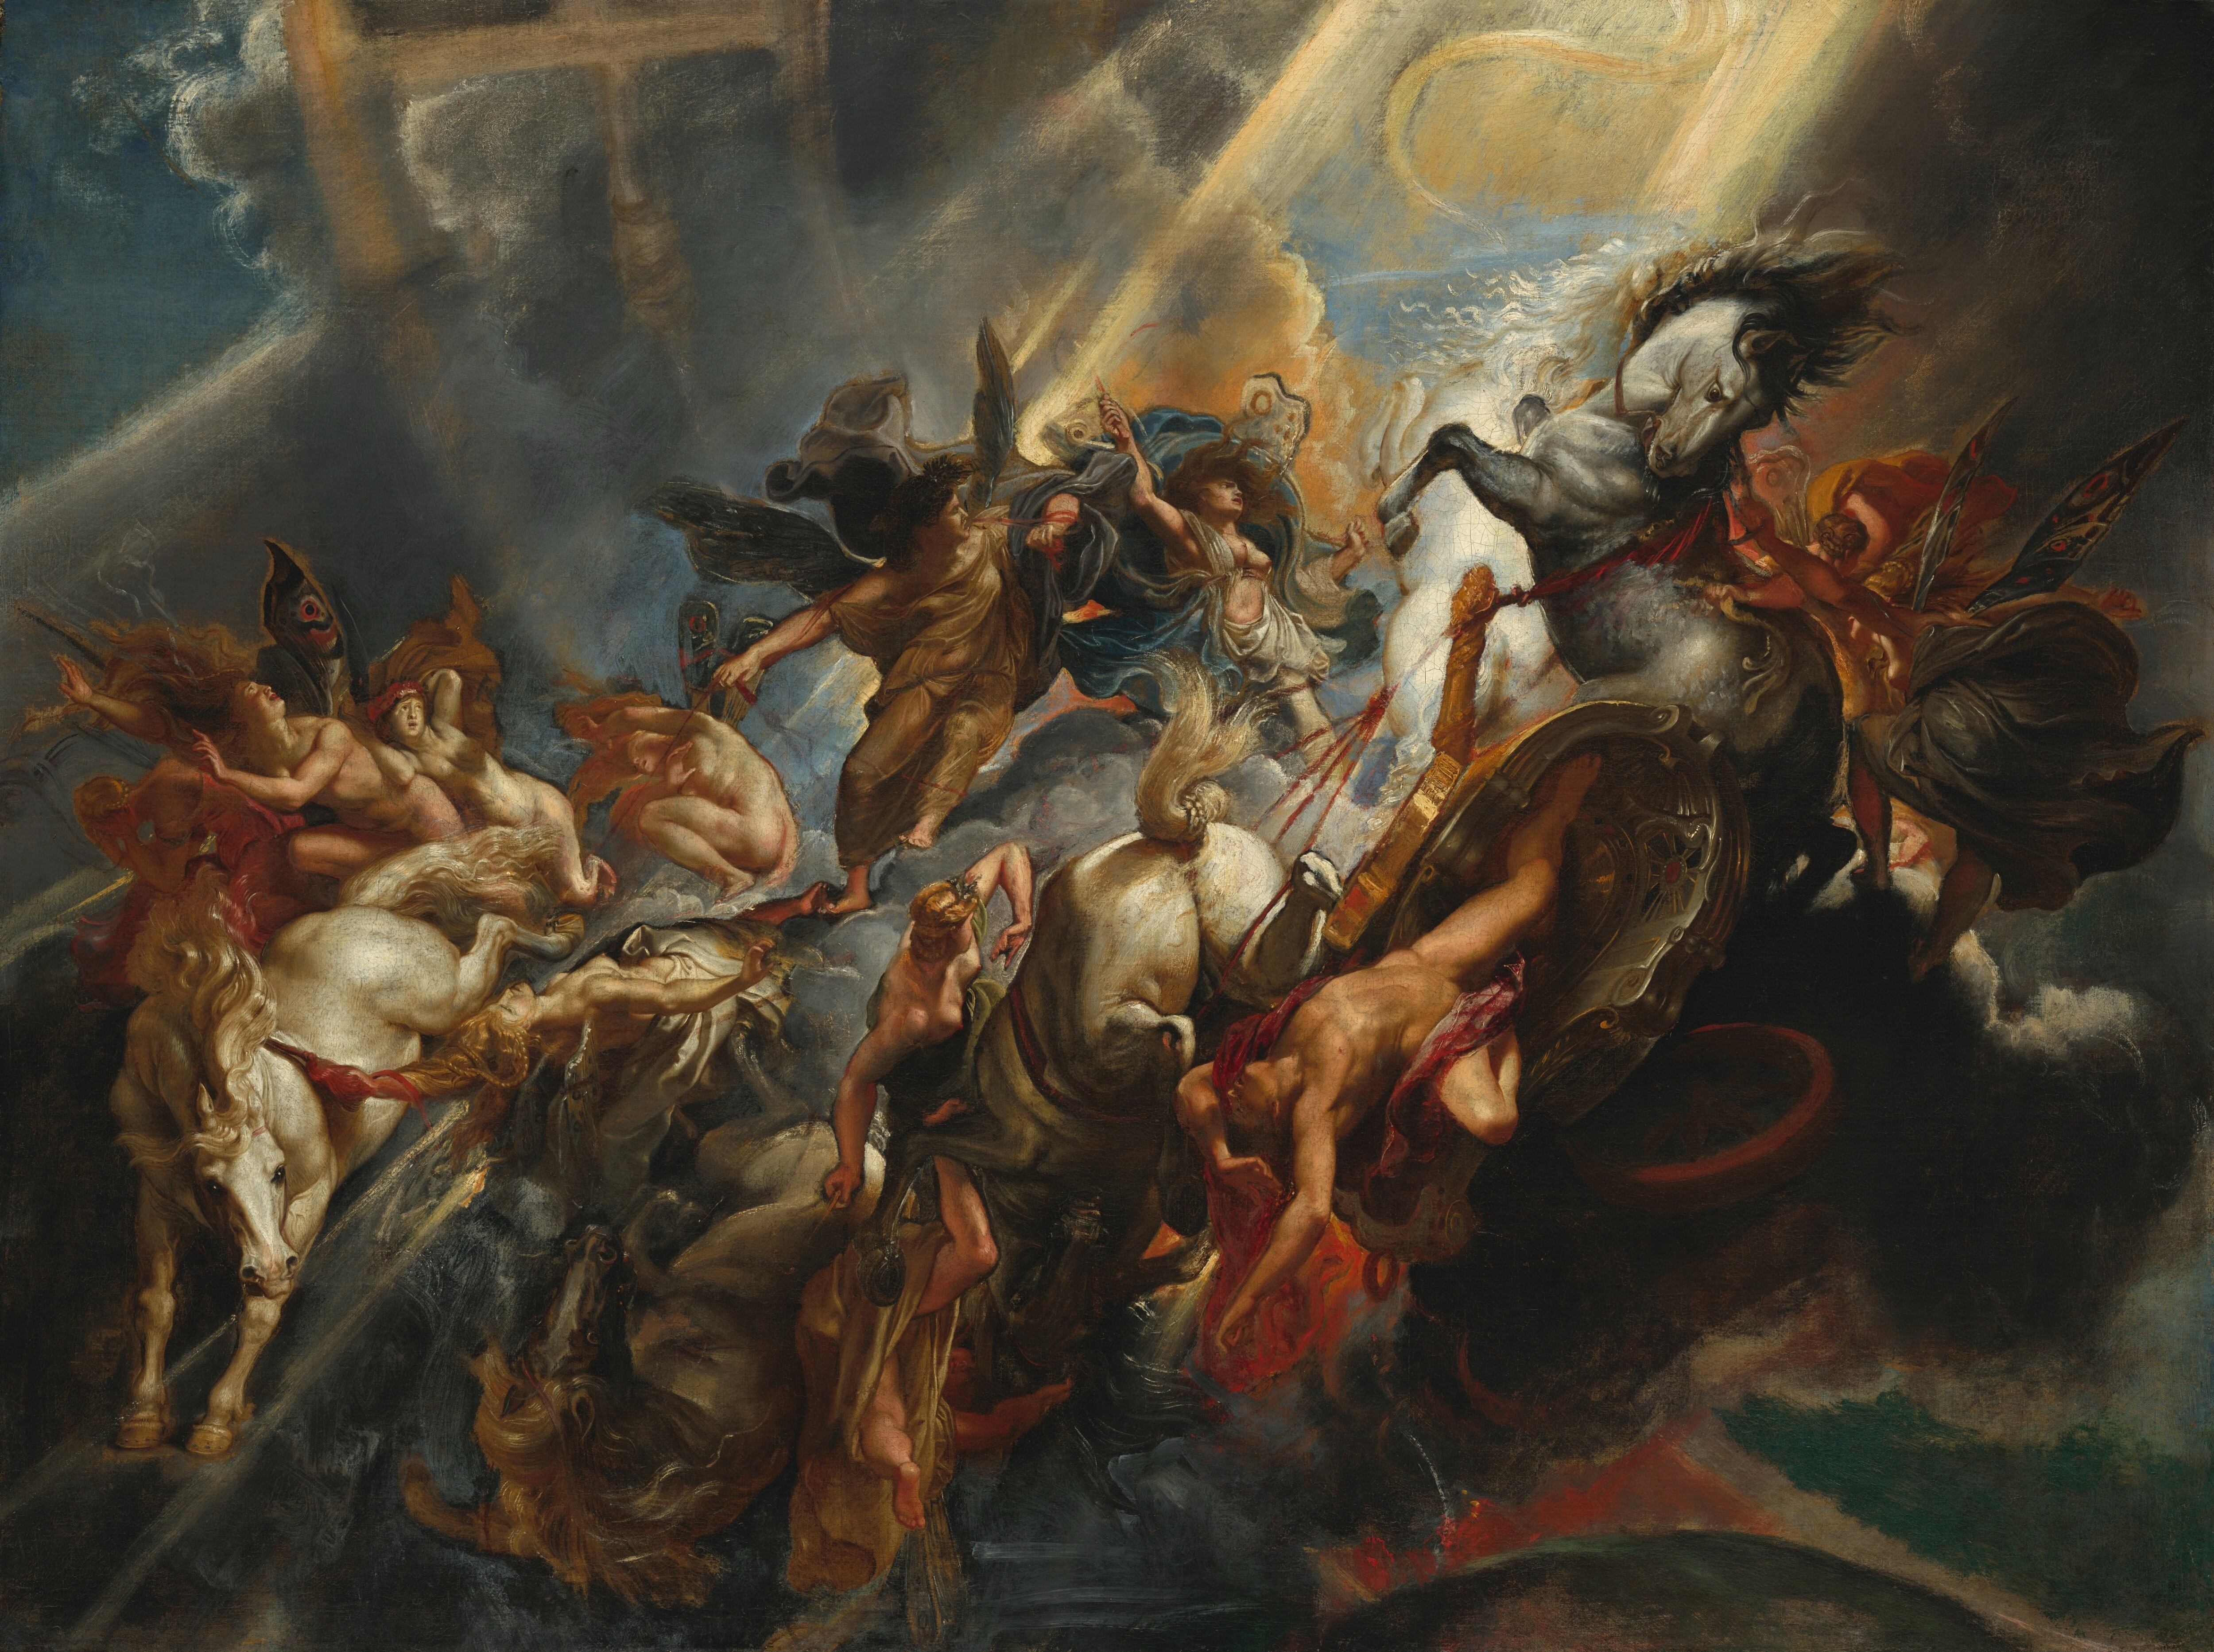 Gattungen der Malerei Peter Paul Rubens Der Sturz des Phaethon